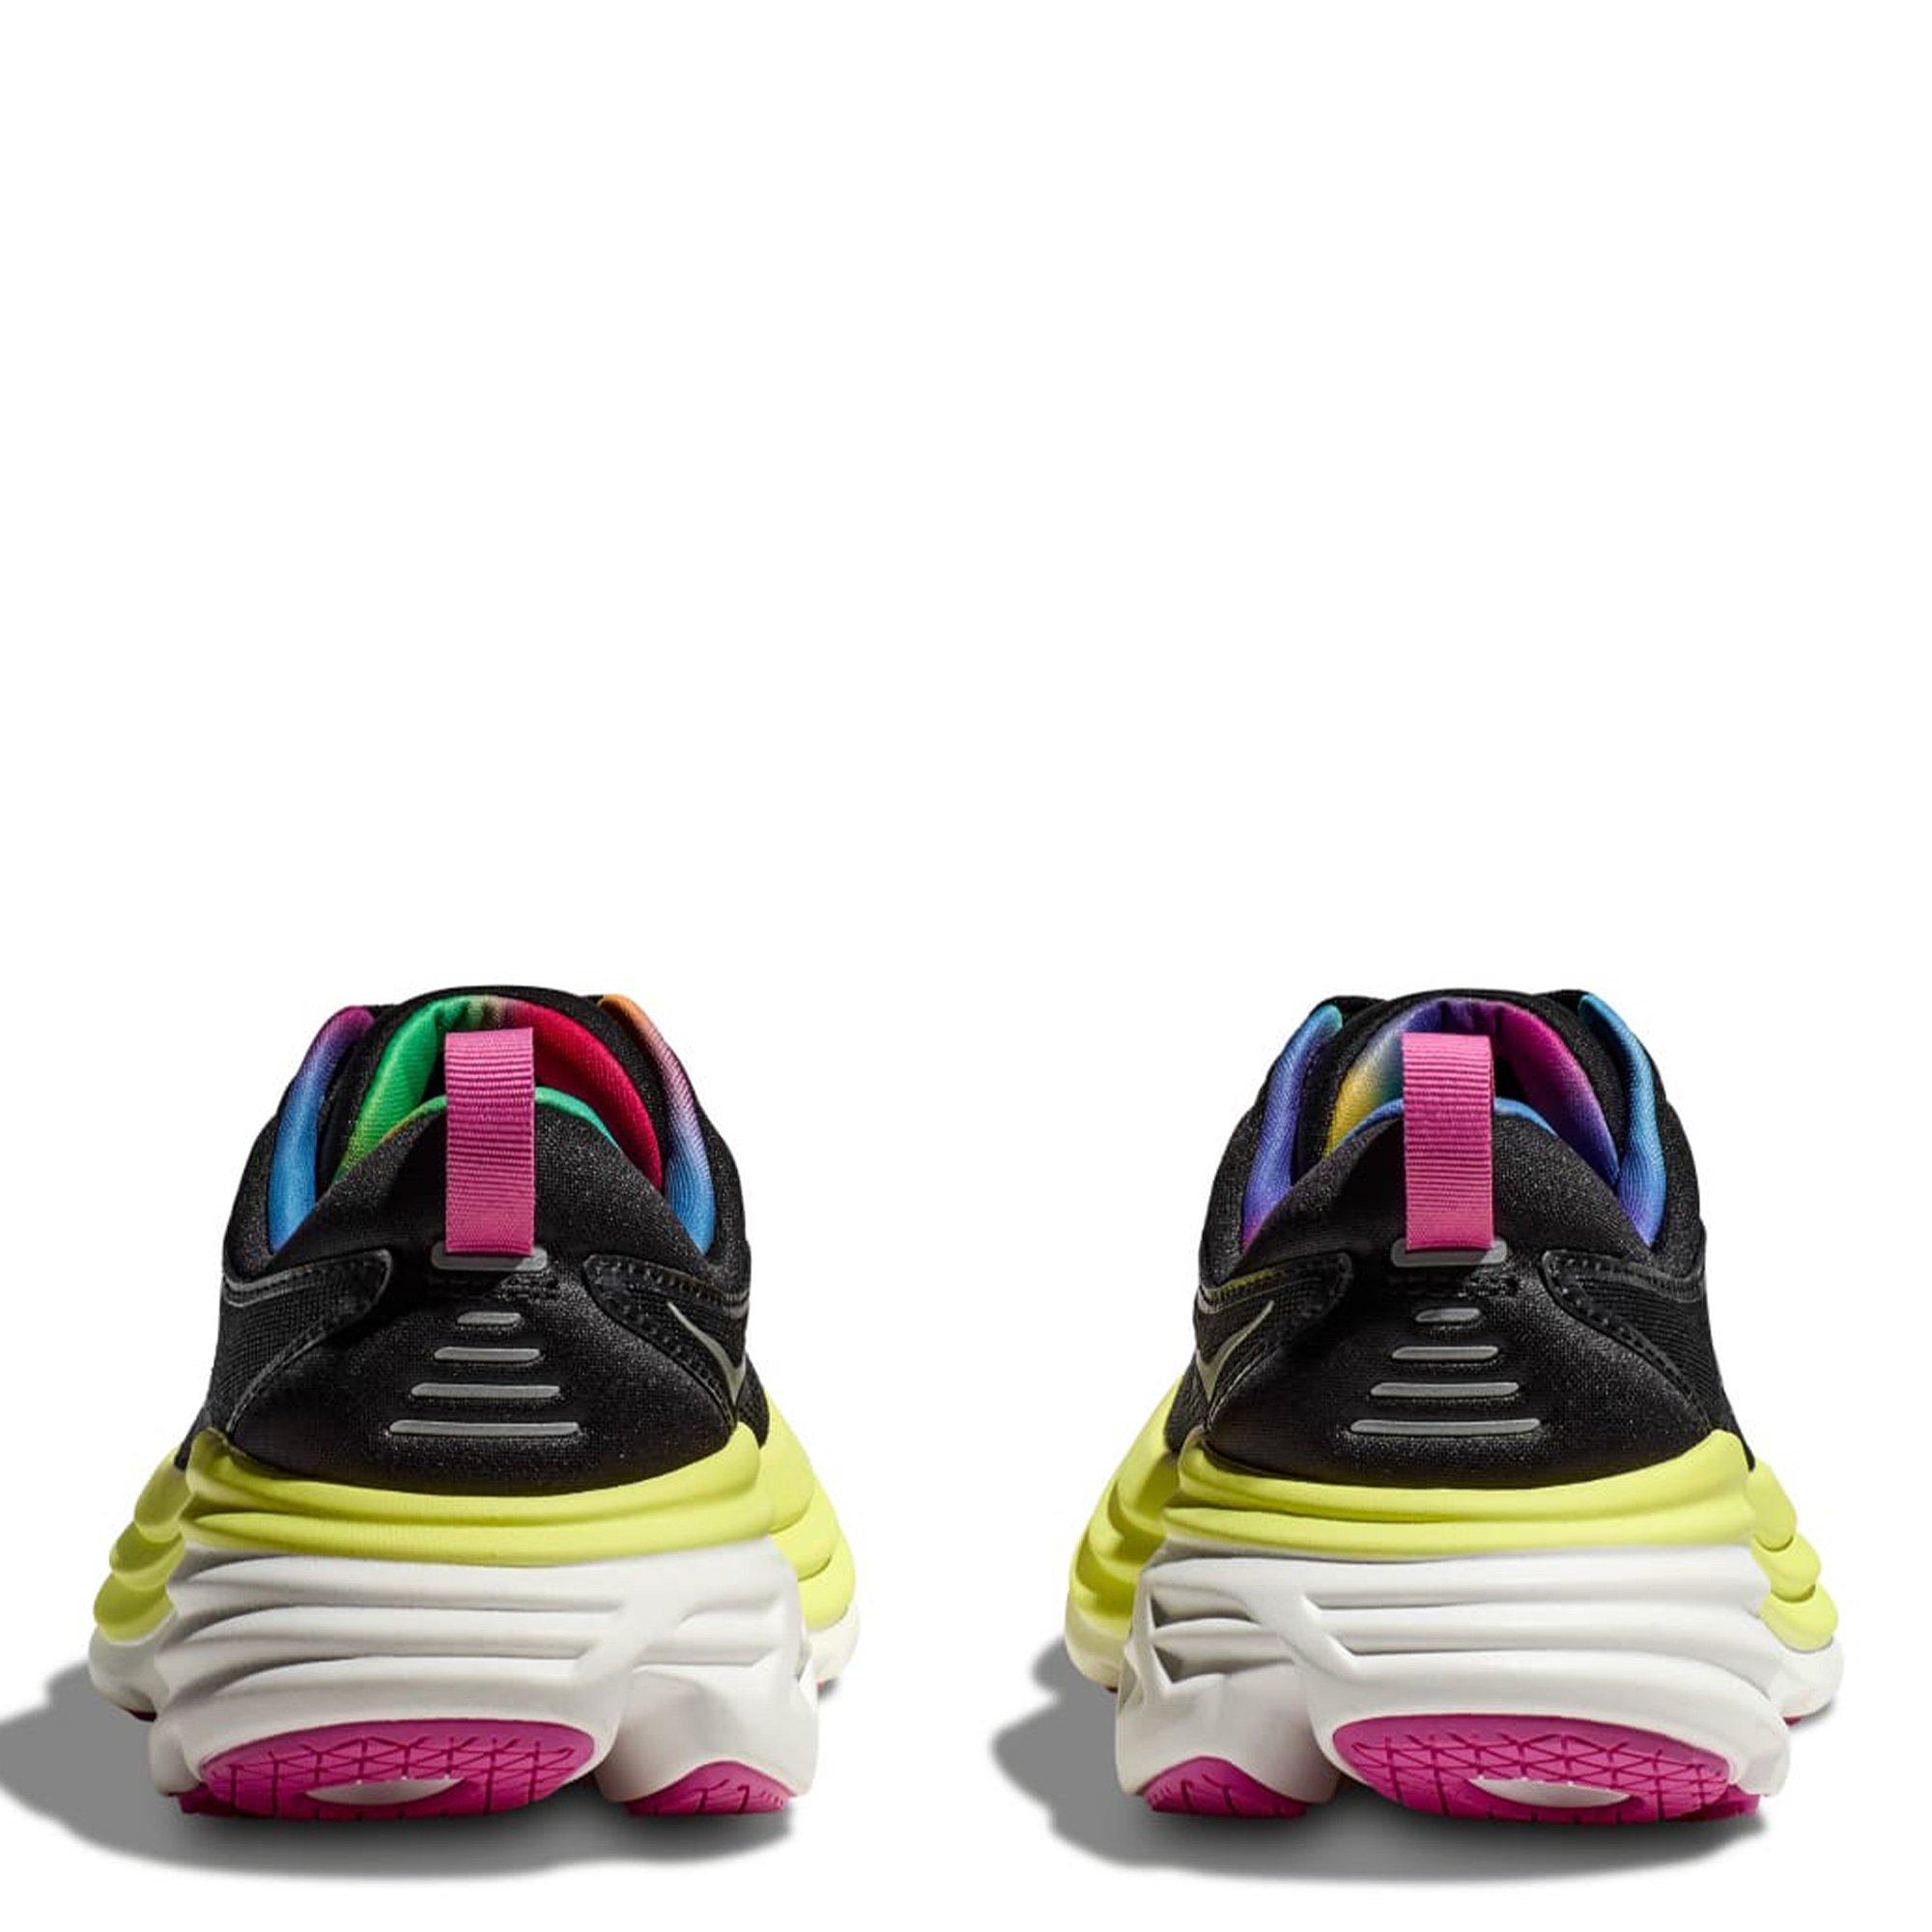 Hoka | Bondi 8 Womens Running Shoes | Everyday Neutral Road Running ...